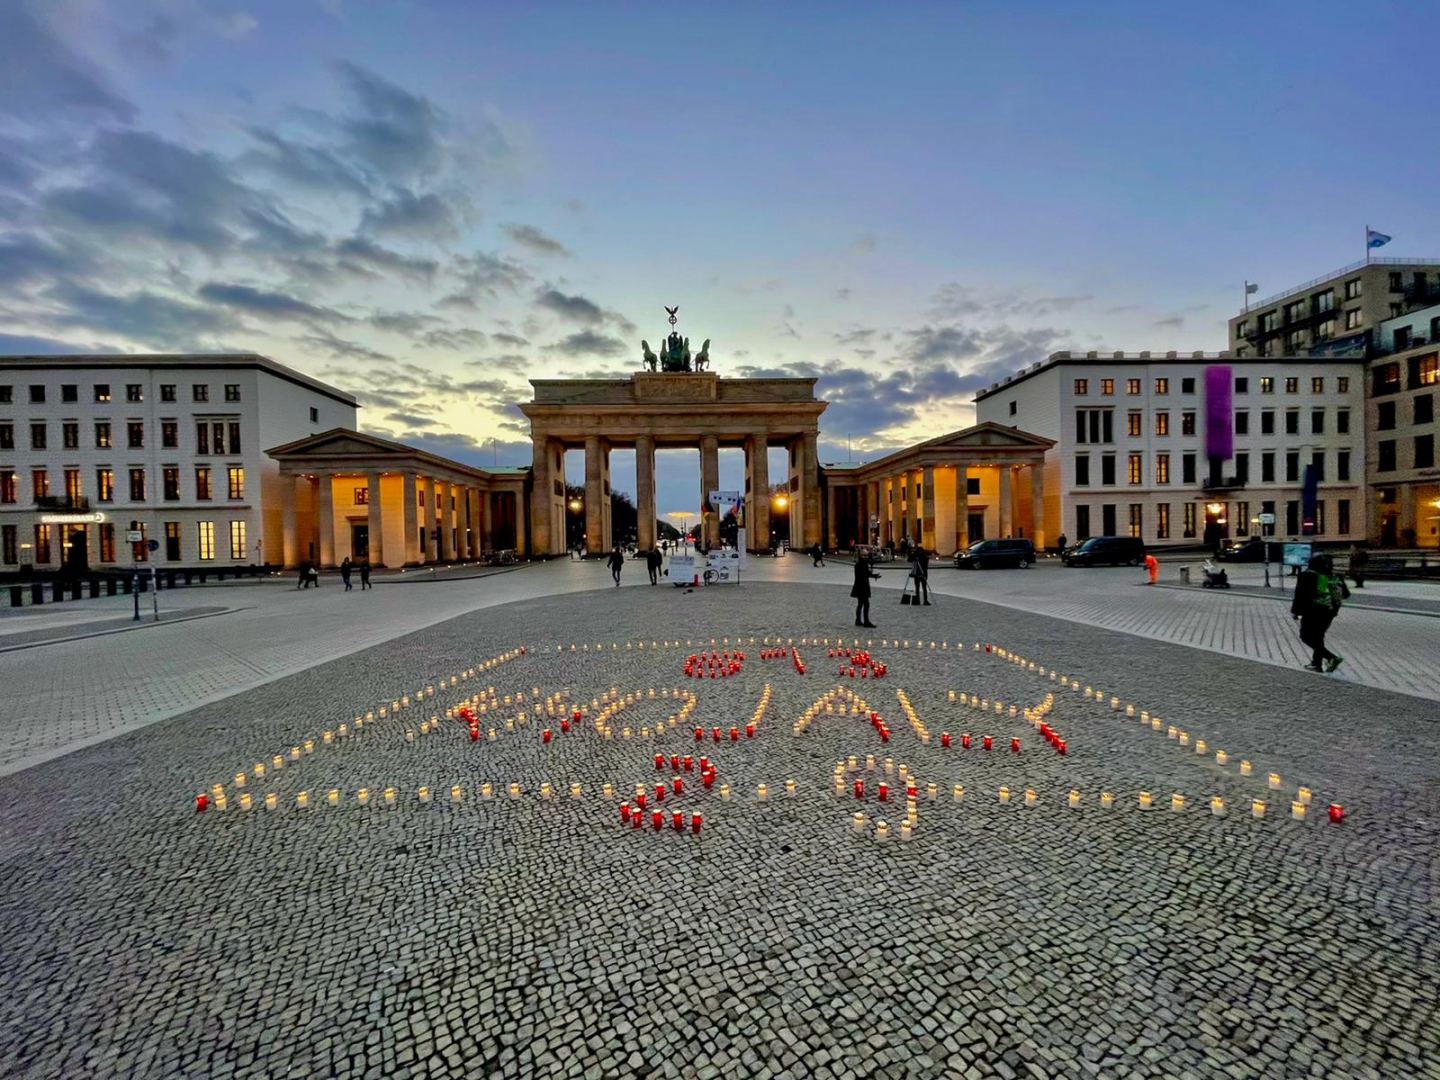 Almaniyada Xocalı soyqırımının 29-cu ildönümü ilə bağlı maraqlı flaşmob təşkil edilib (FOTO)